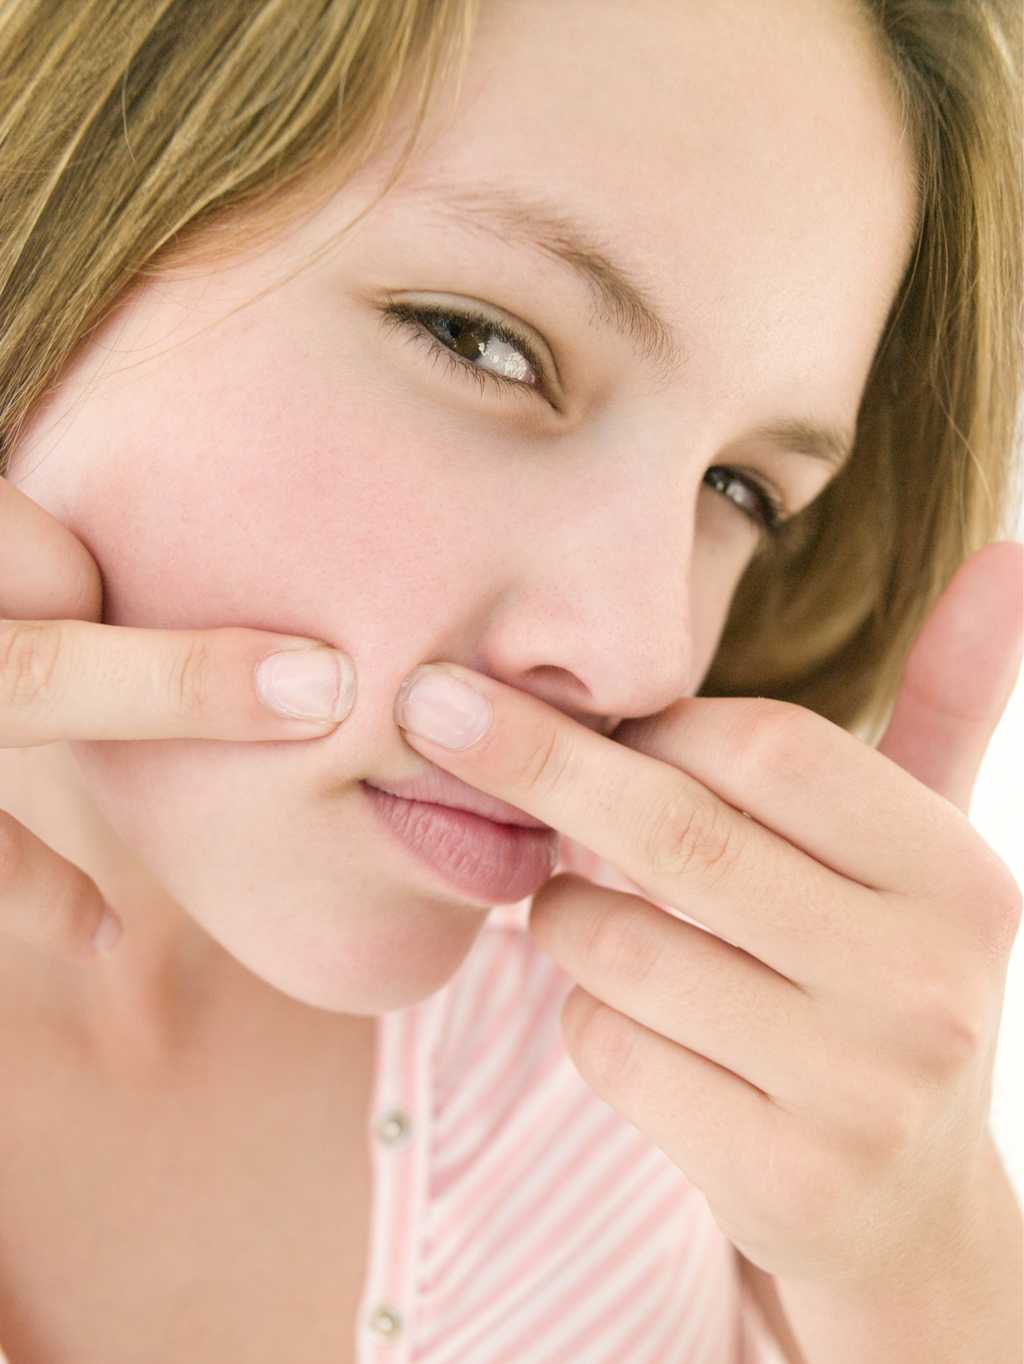 Les antiacnéiques permettent de réduire les manifestations de l’acné. © Phovoir